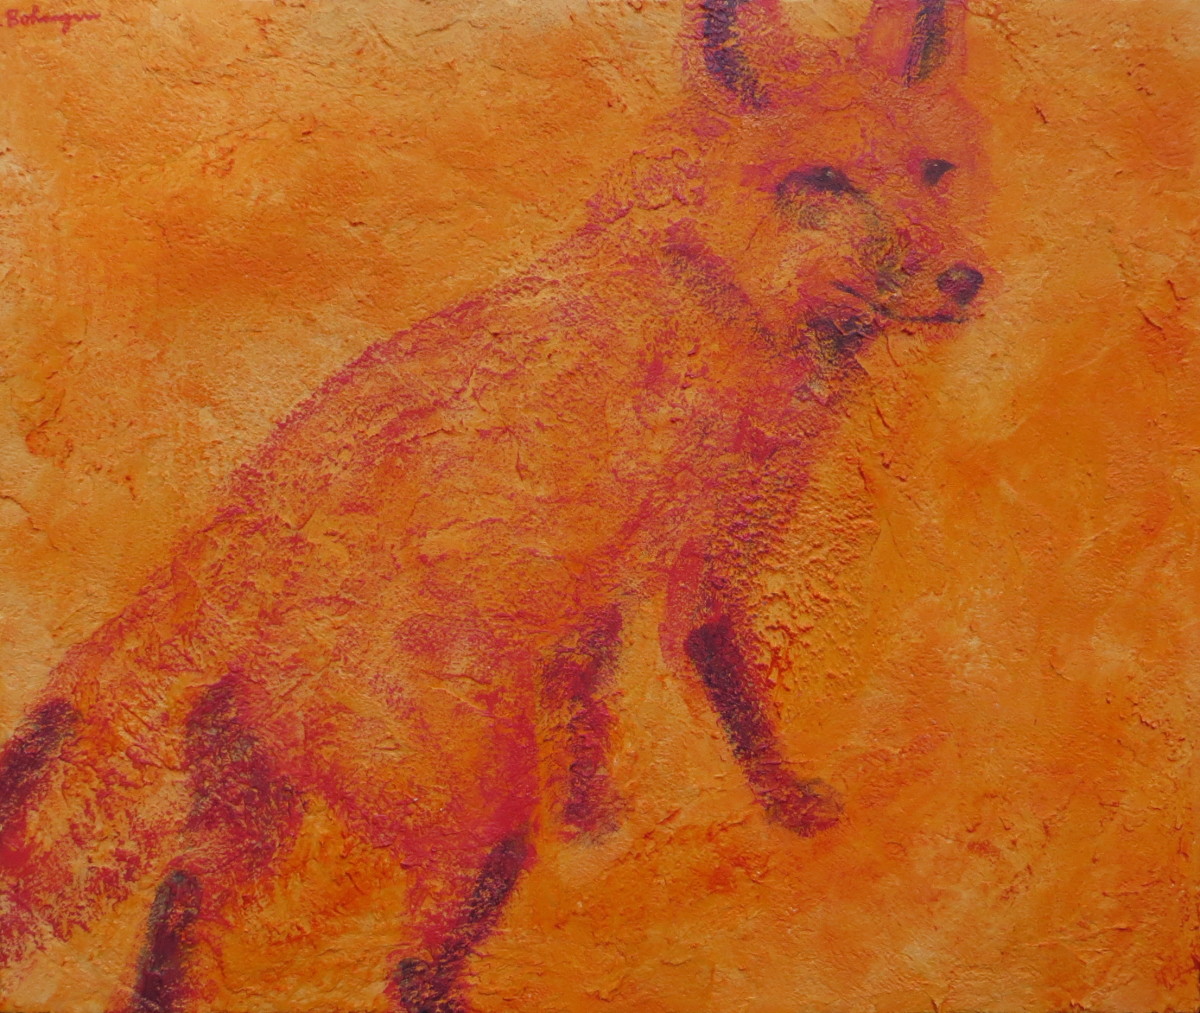 Red Fox by Lisa Bohnwagner 